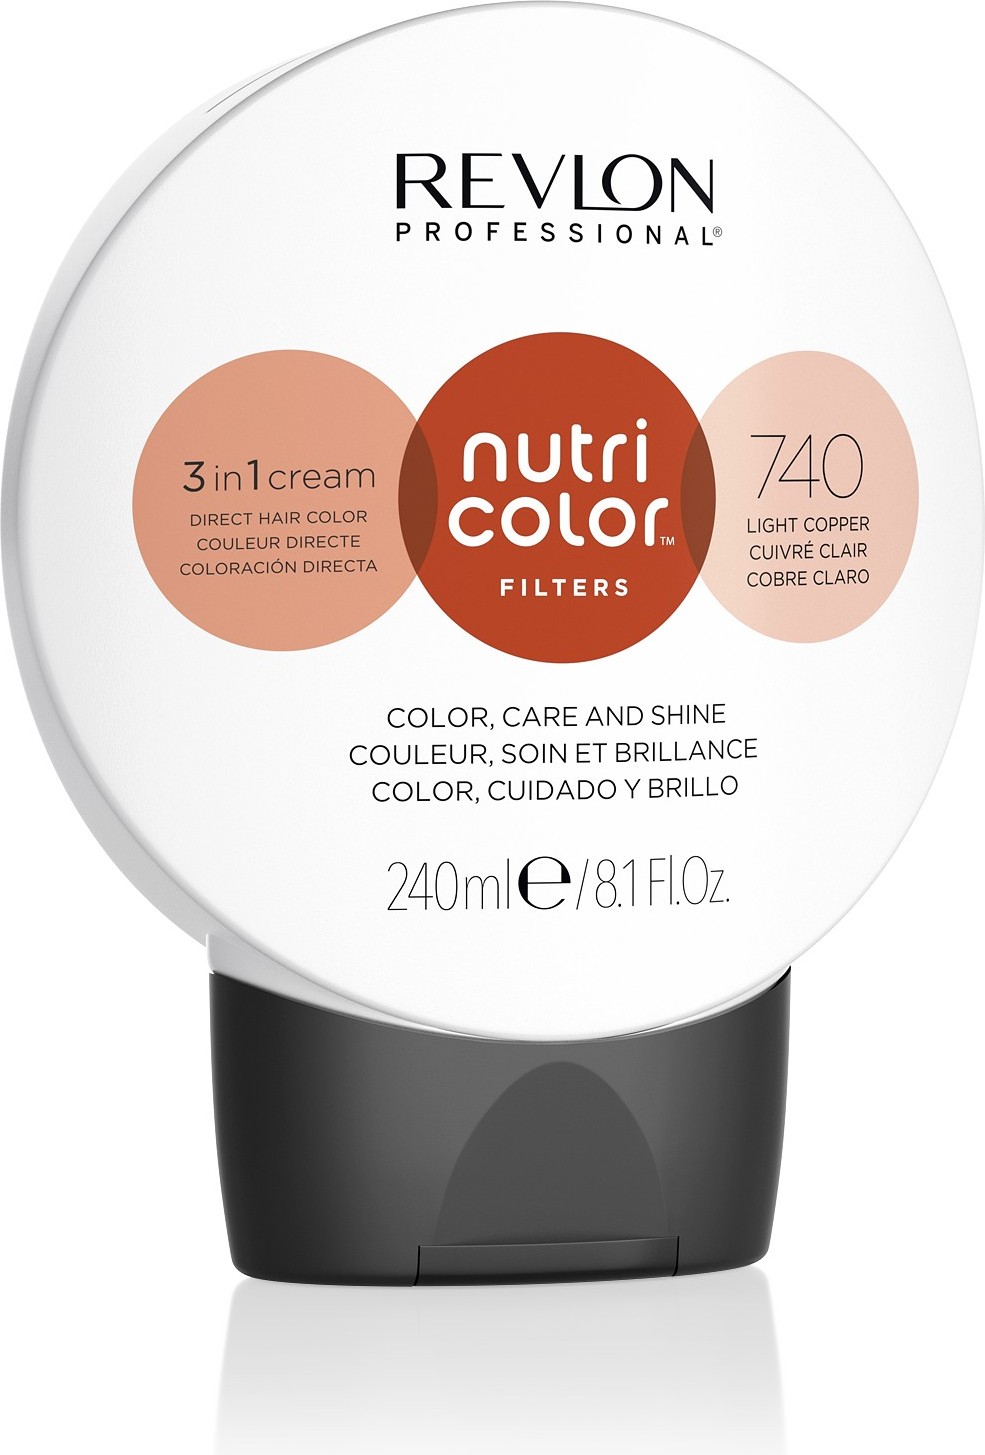  Revlon Professional Nutri Color Filters 740 Cuivre 240 ml 